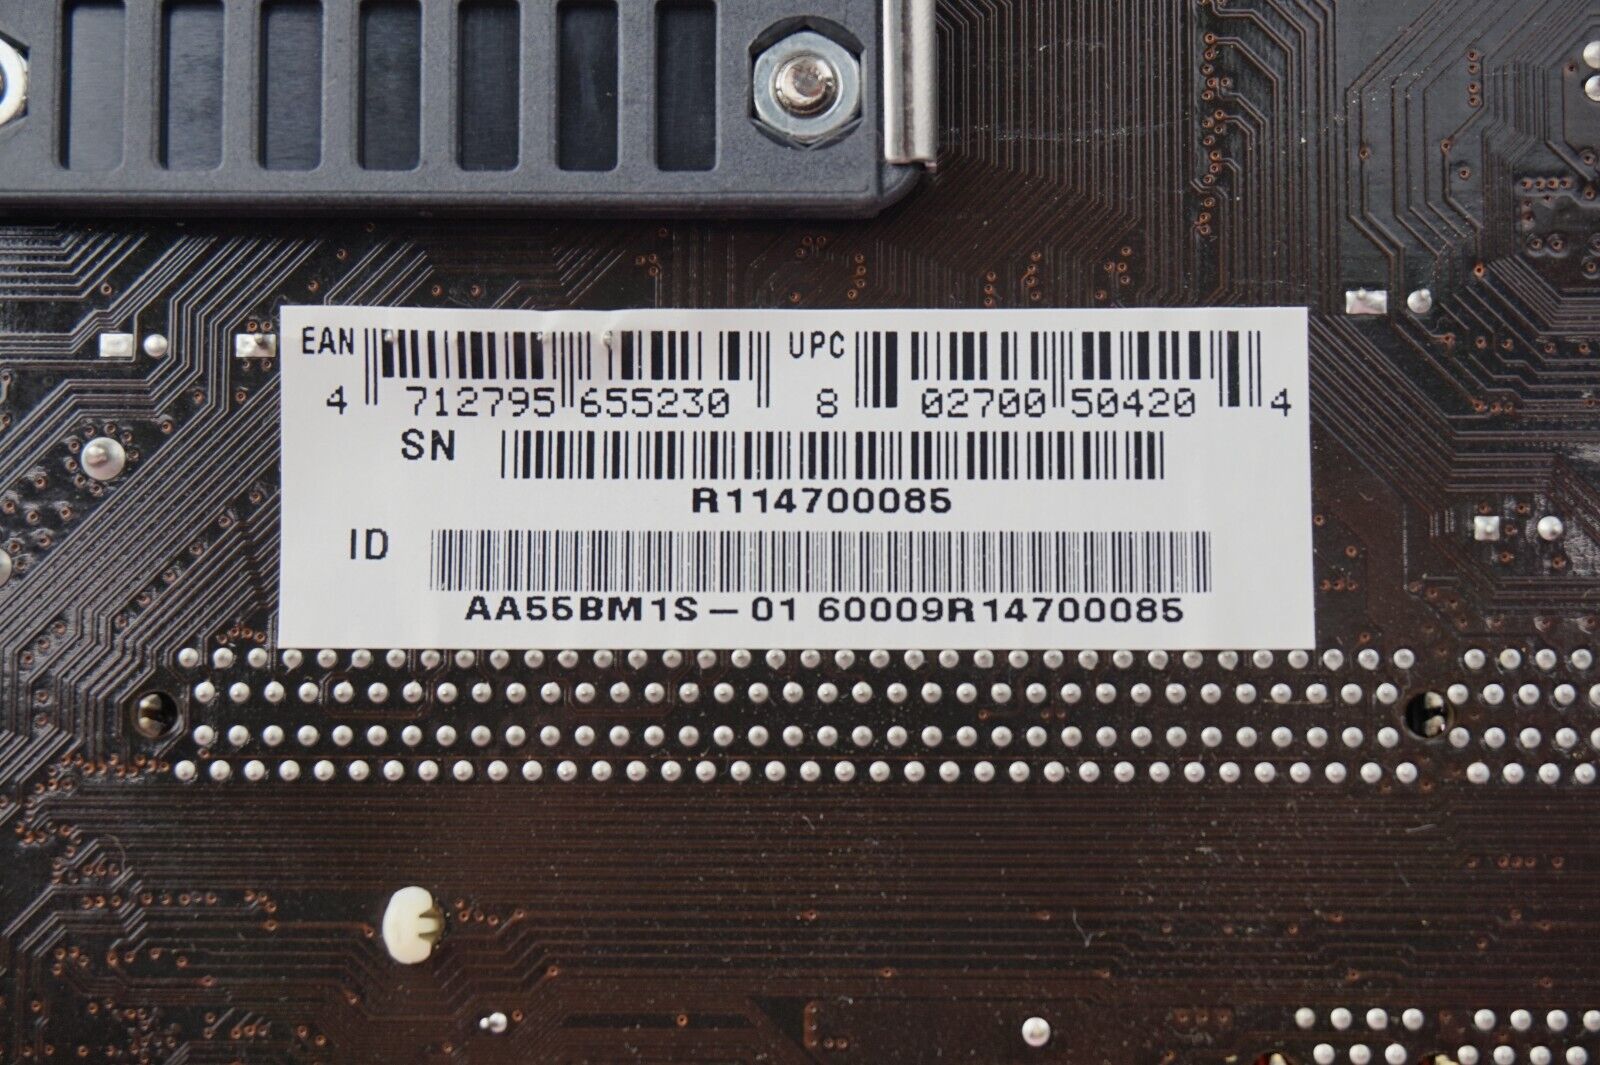 Biostar A55MH Motherboard AMD A4-3300 2.5GHz 4GB RAM w/ I/O Shield